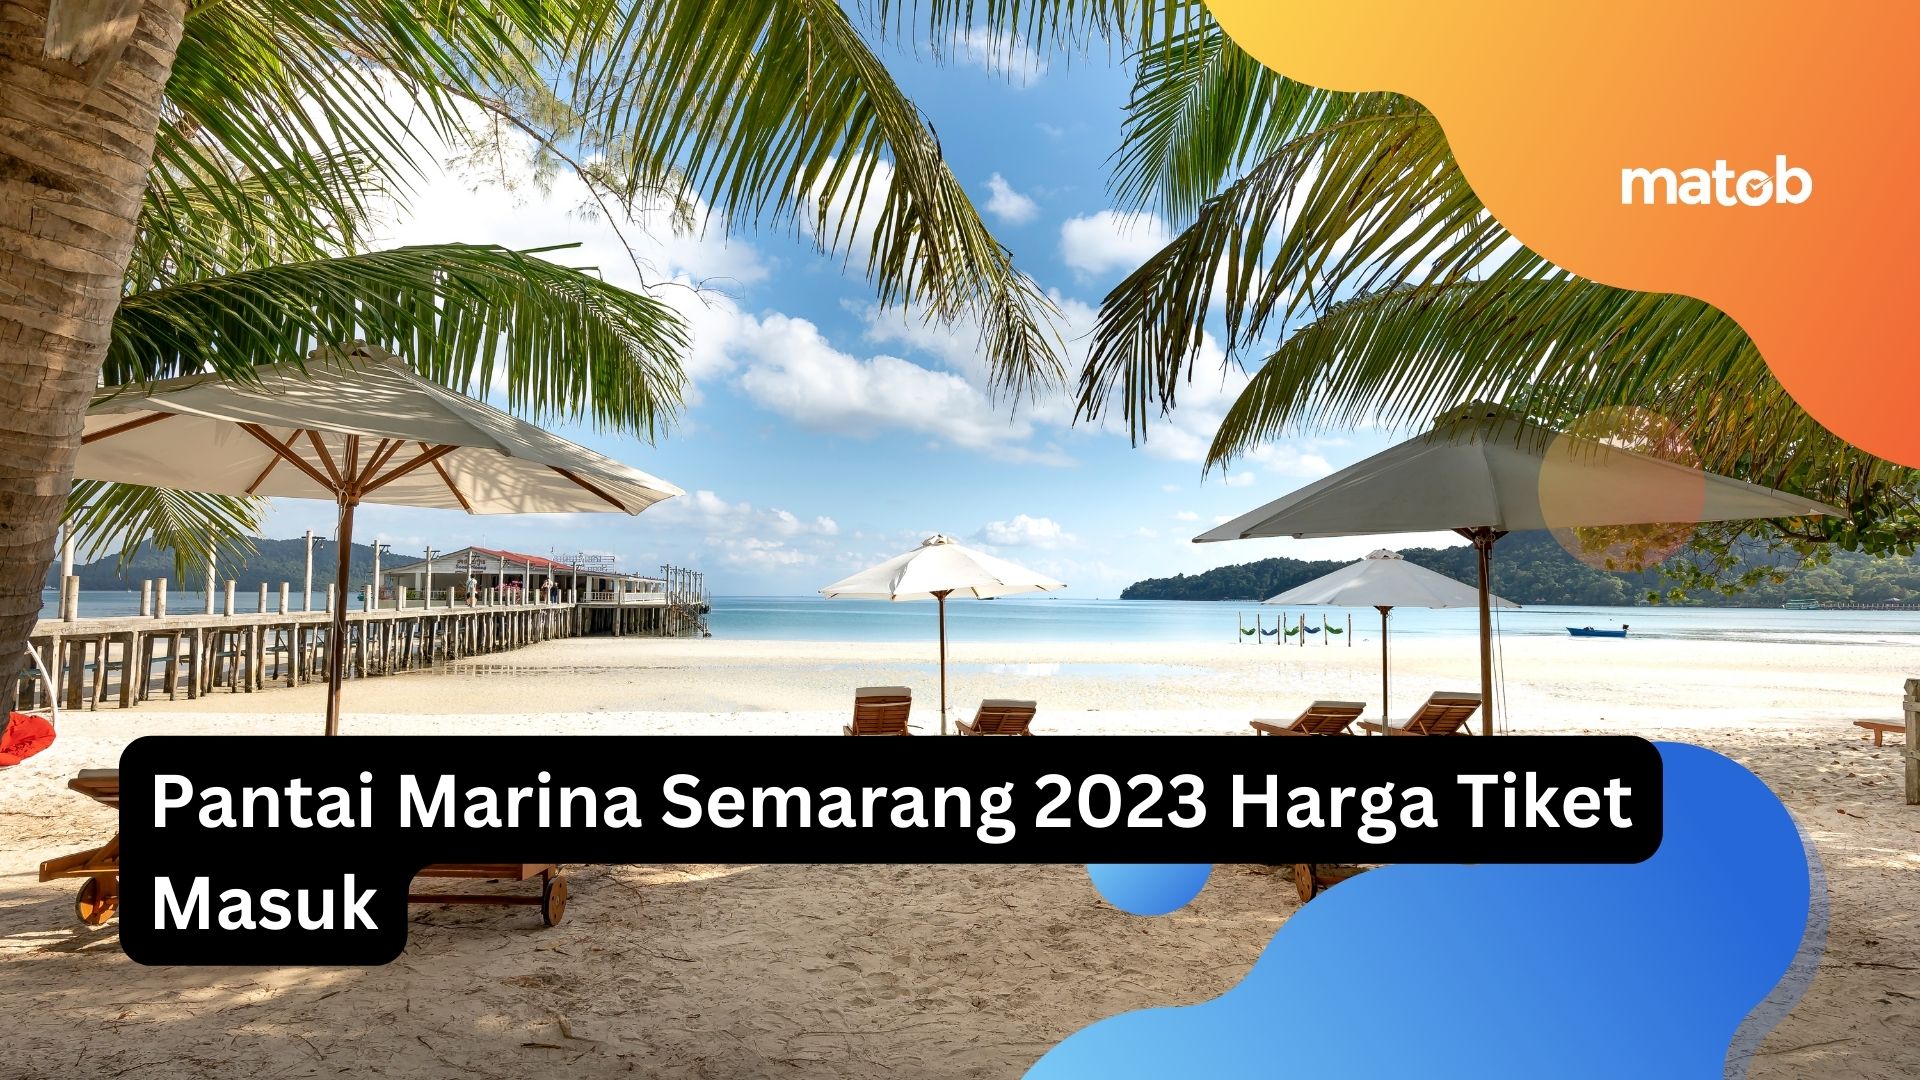 Pantai Marina Semarang 2023 Harga Tiket Masuk